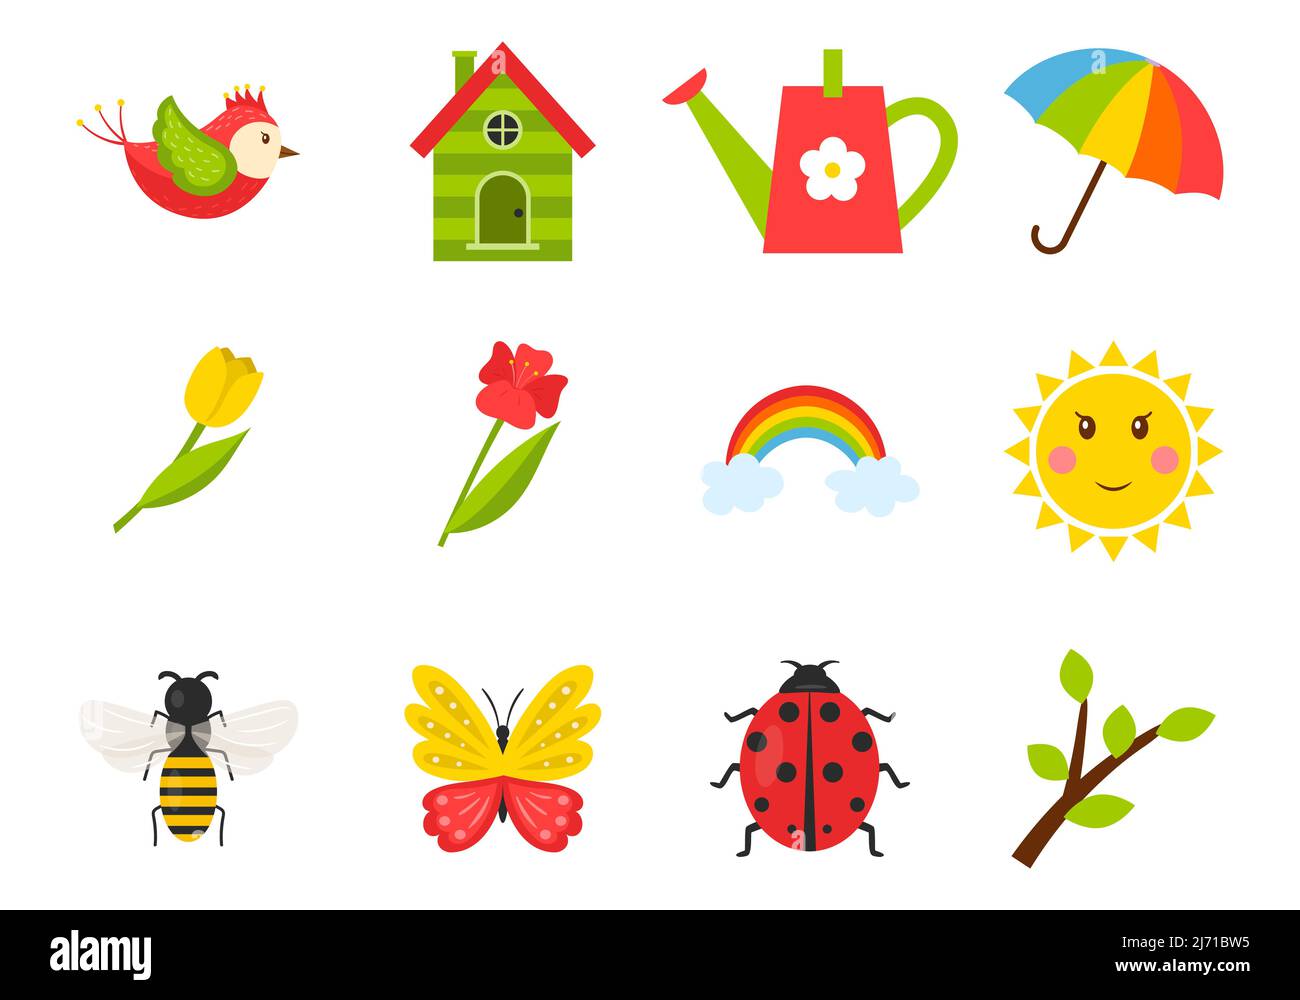 Un conjunto de iconos sobre el tema de la primavera, el verano. Insectos, pájaros, tulipanes, clima, birdhouse.Color ilustraciones vectoriales en estilo de dibujos animados. Aislado en una w Ilustración del Vector